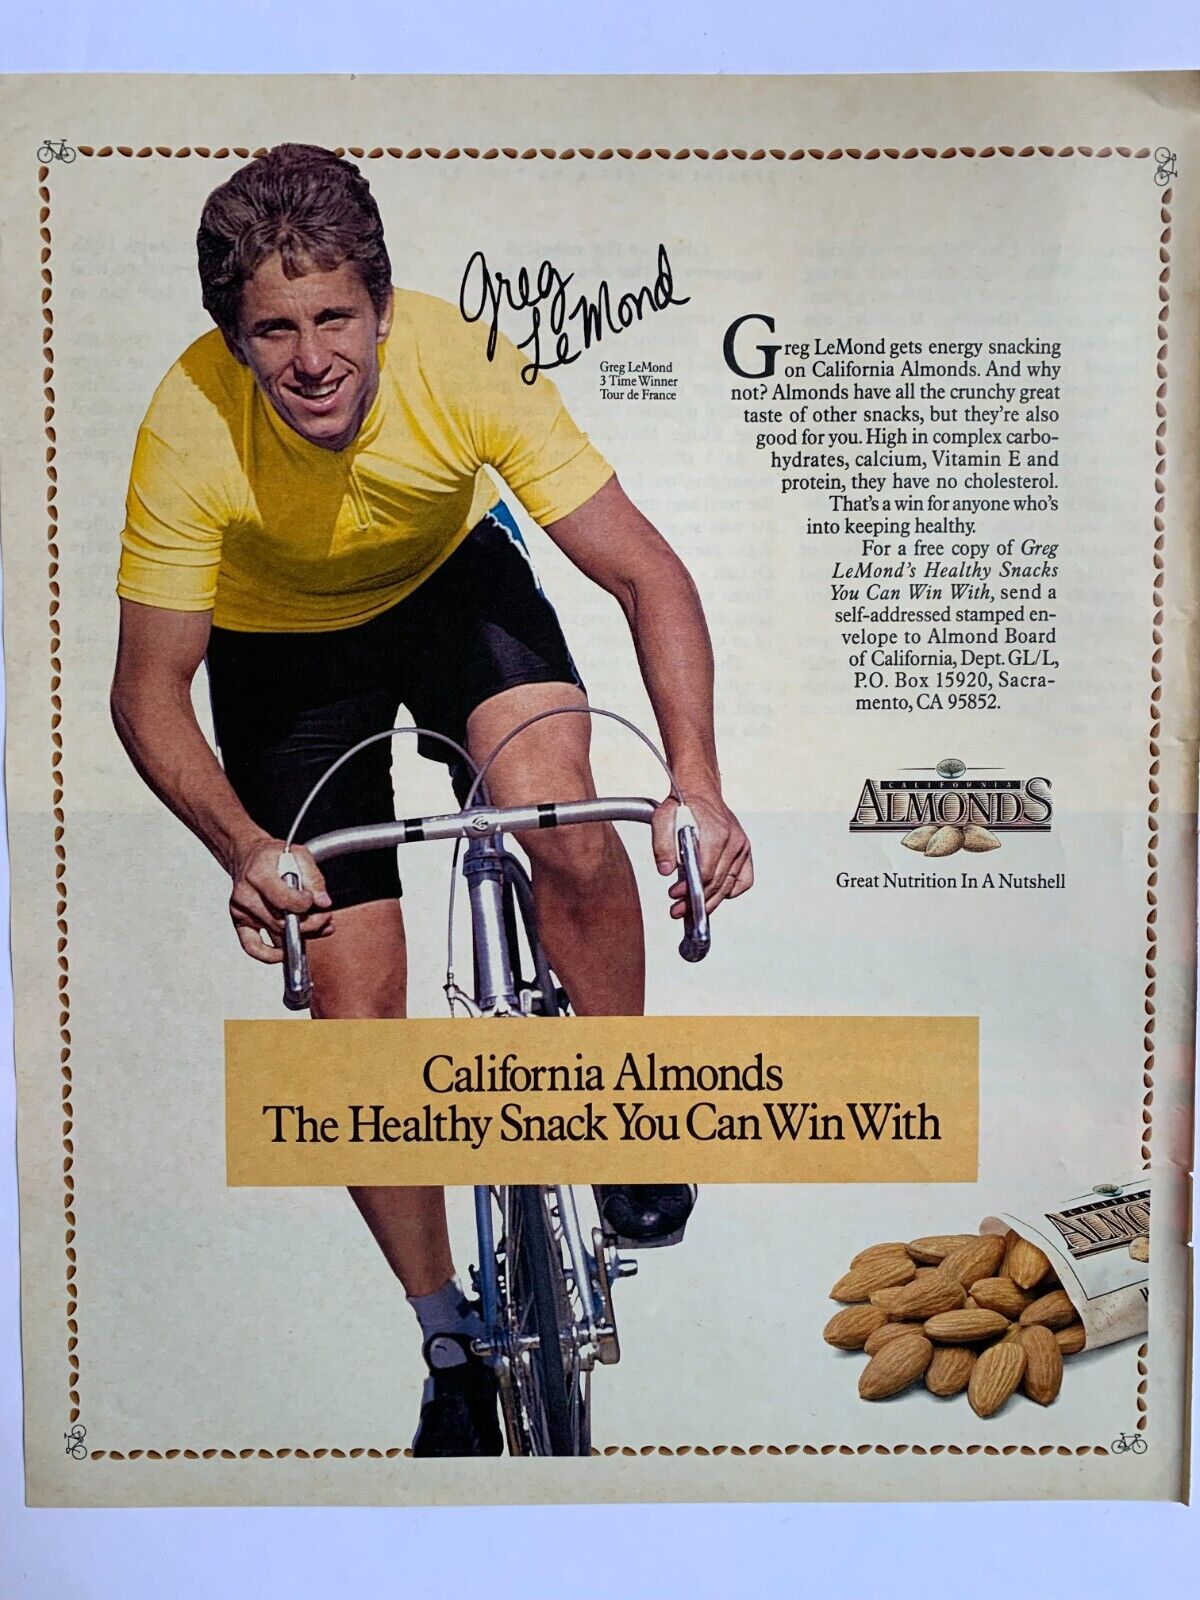 Print Ad California Almonds Greg LeMond Tour de France Winner on Bike